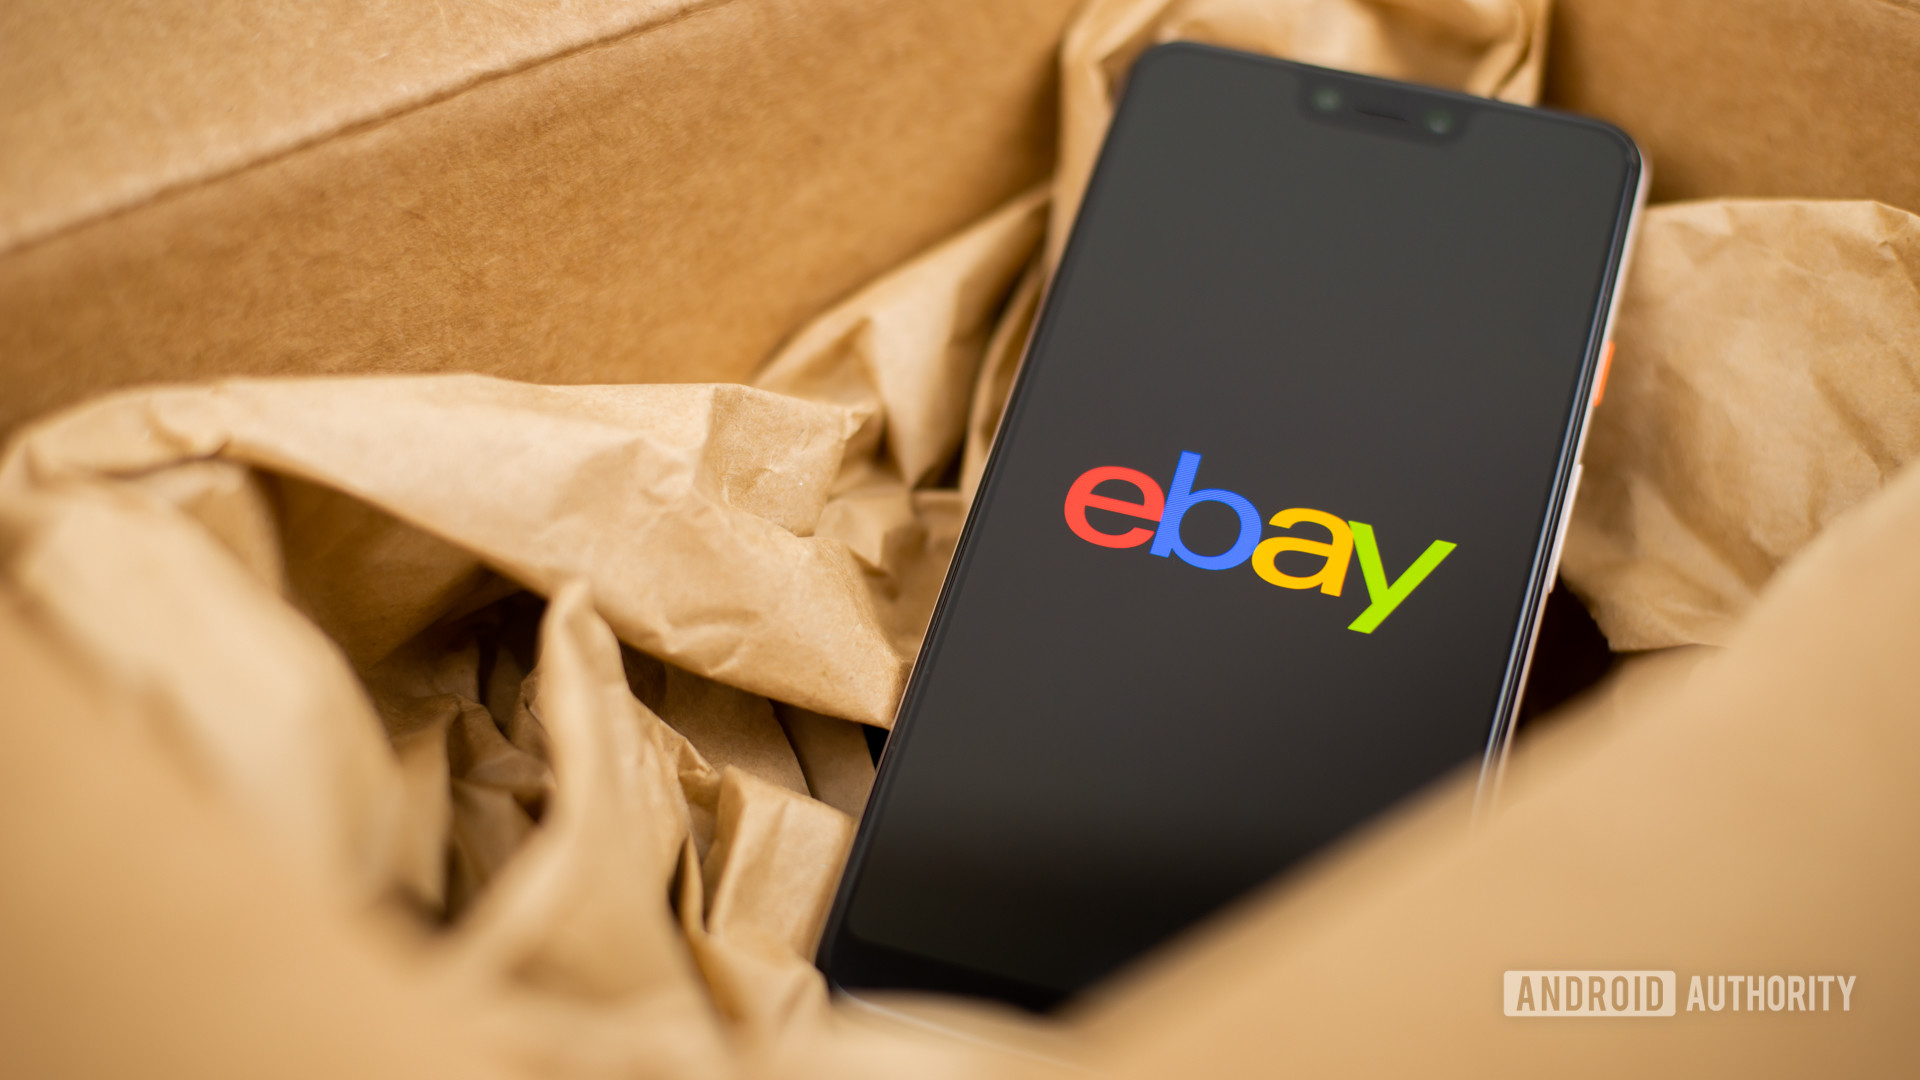 eBay stock photo 2 - Buying a used phone